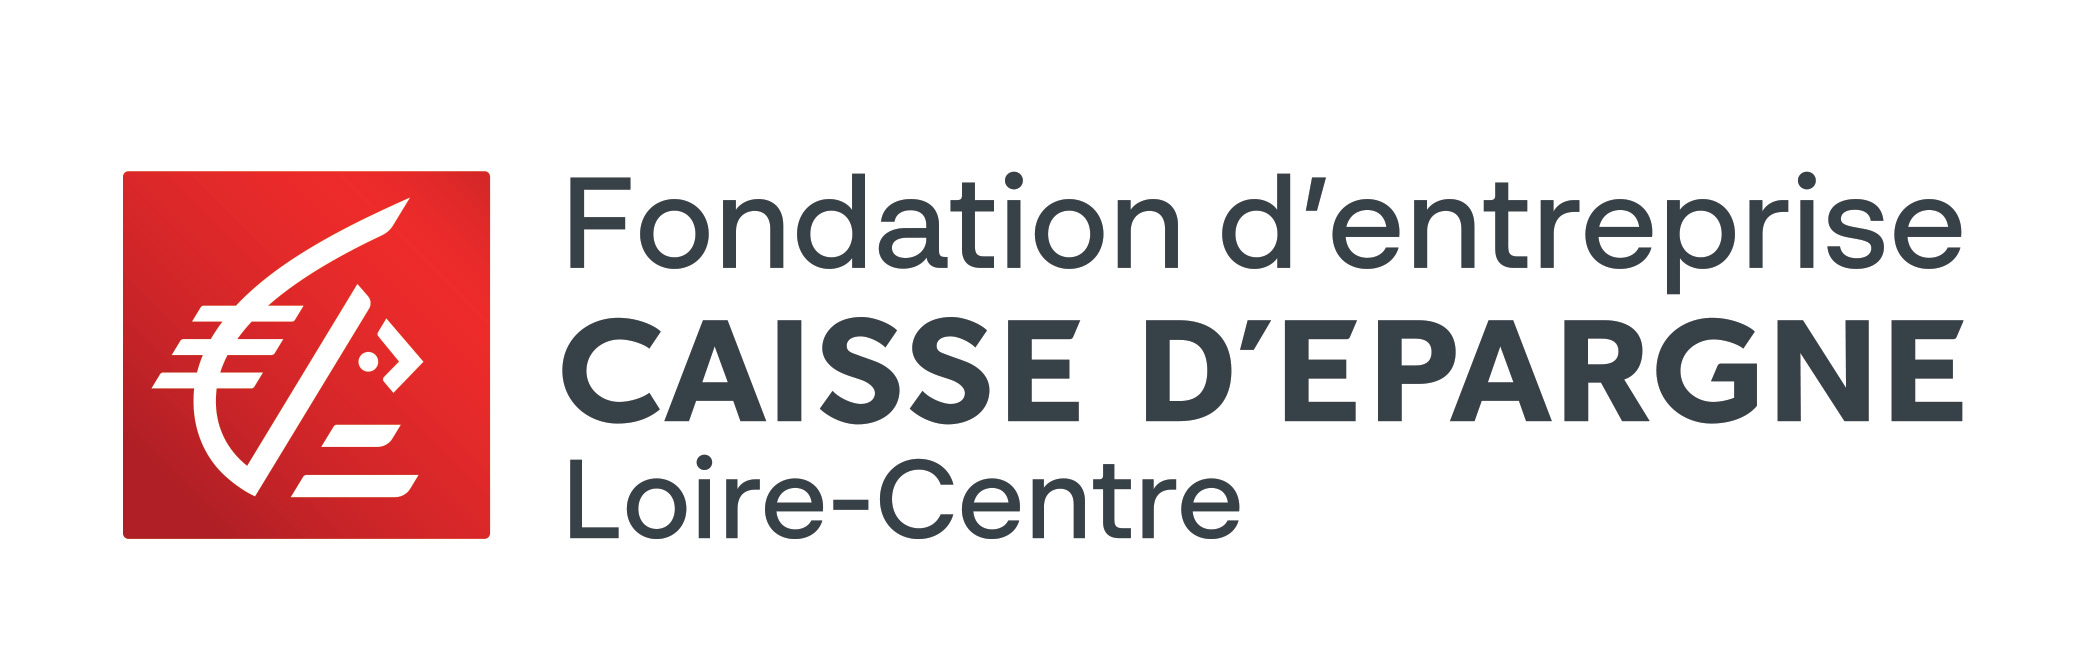 Fondation CE